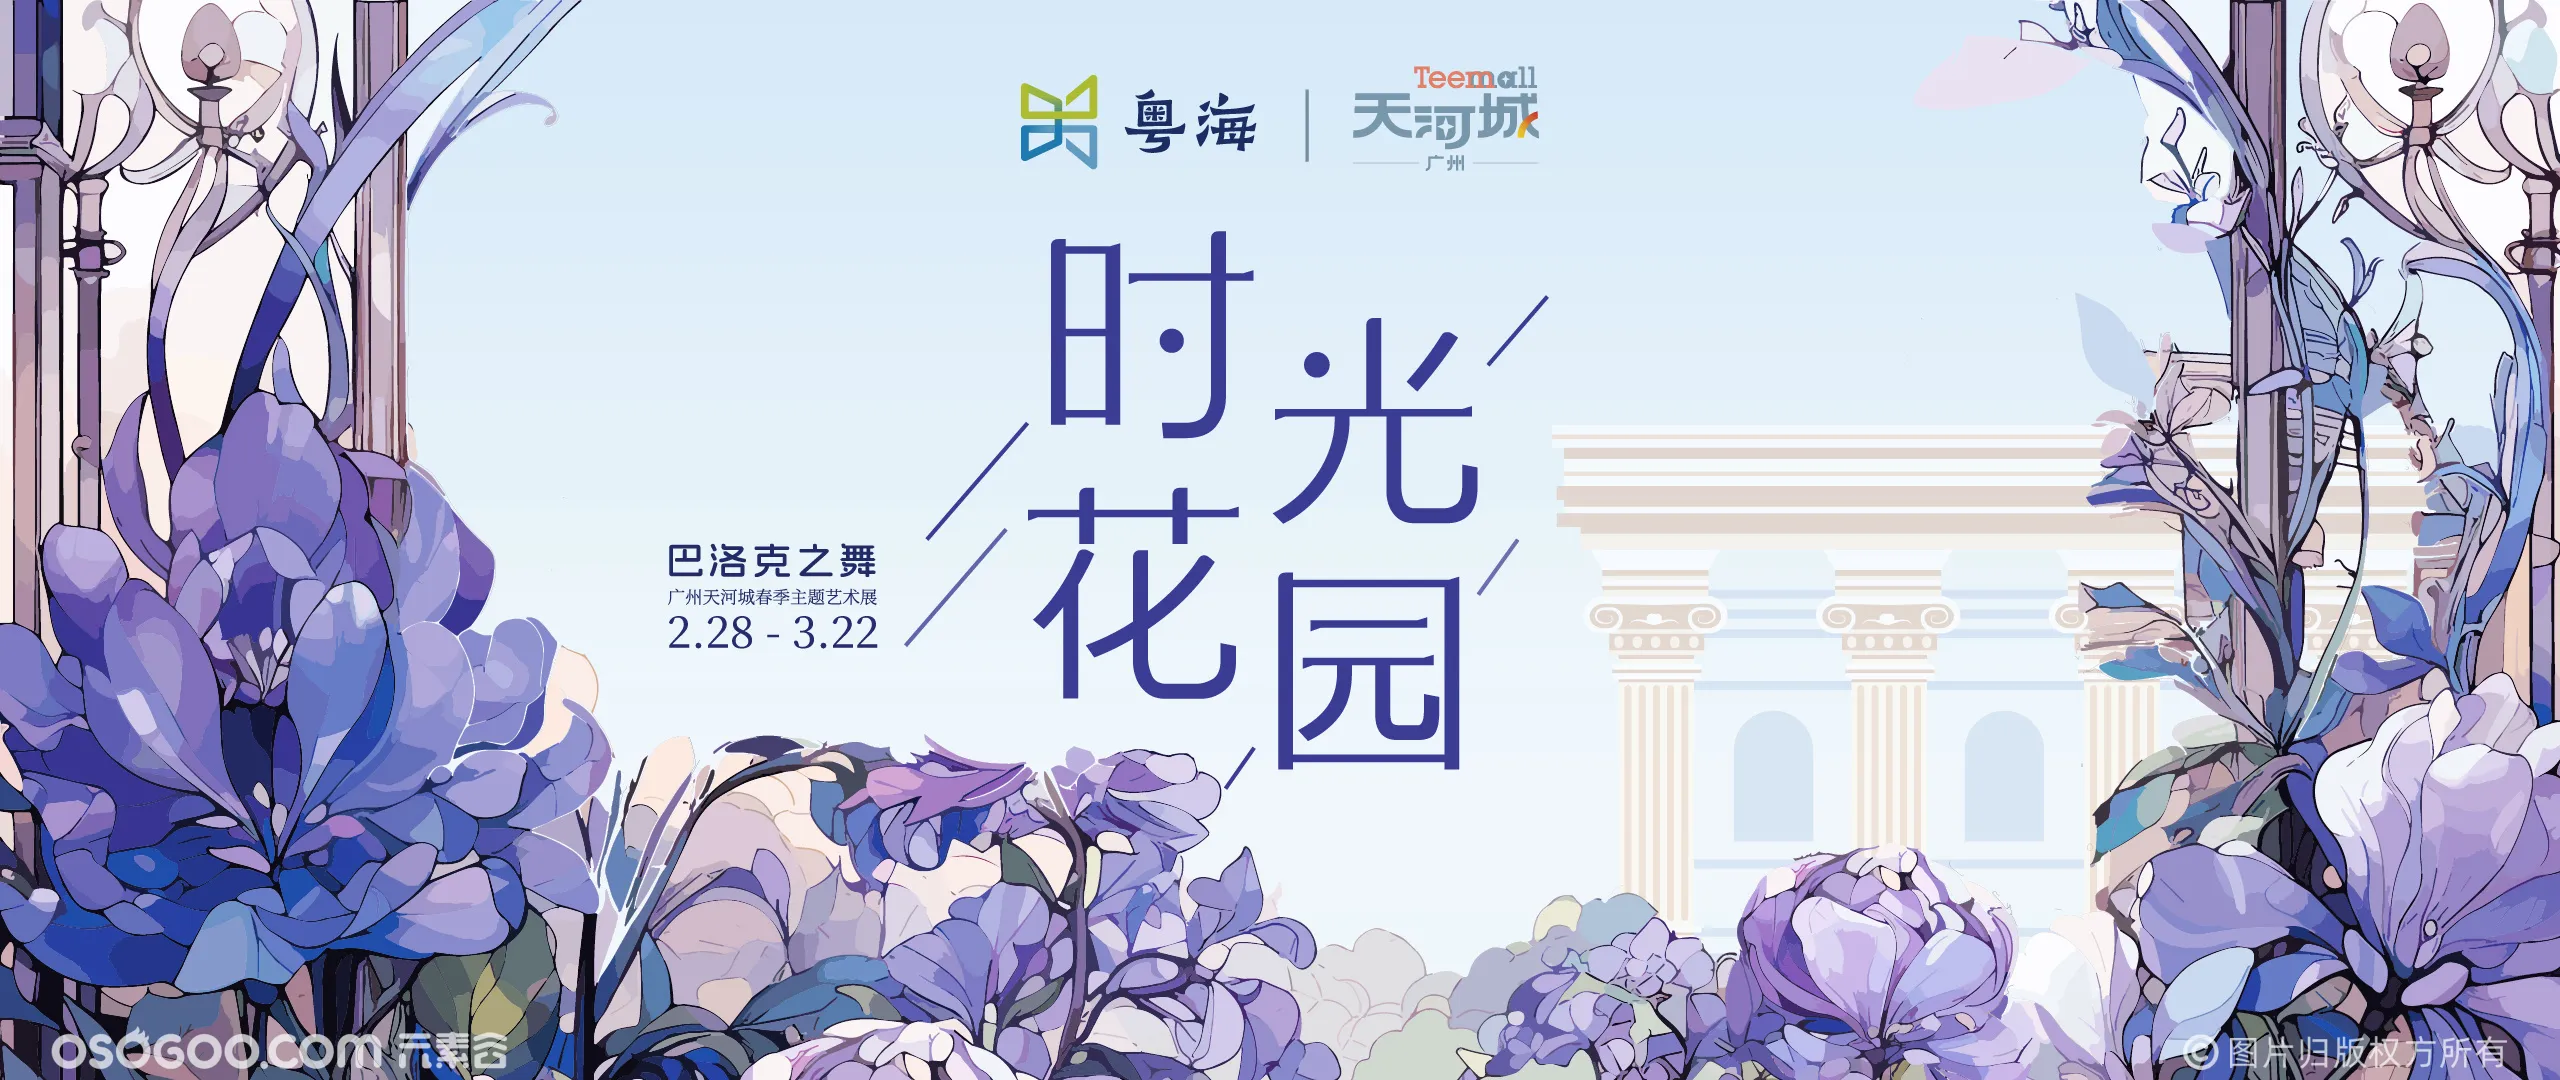 广州天河城 | 时光花园巴洛克之舞春季主题艺术展